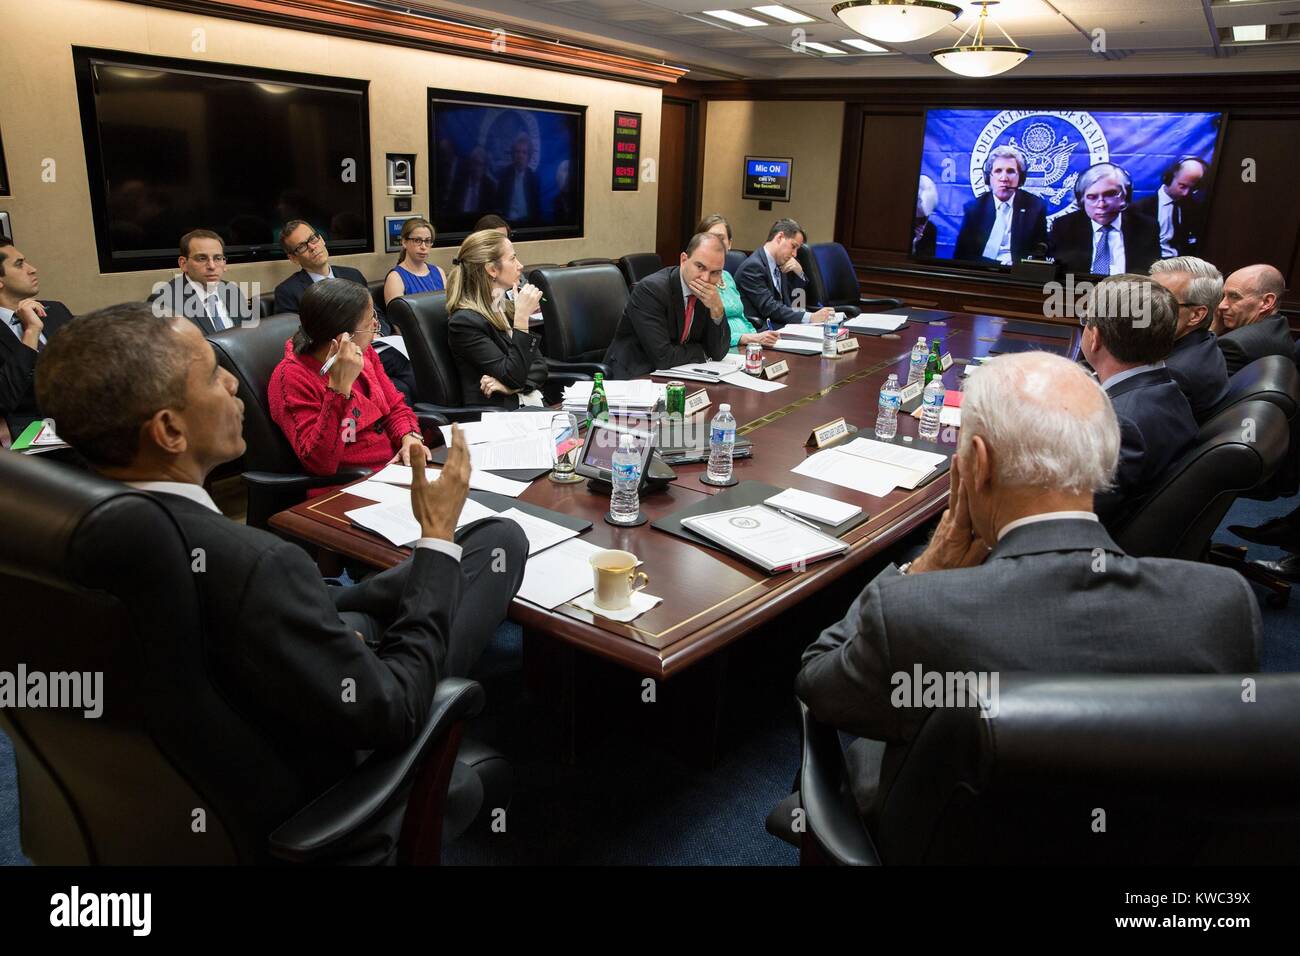 El presidente Obama y su equipo de seguridad nacional en la teleconferencia en el P5+1 negociaciones con Irán. El 31 de marzo de 2015. En la pantalla se Sec. de Estado John Kerry, Sec. de Energía Ernest Moniz y el equipo negociador de Estados Unidos en Lausana, Suiza. Susan Rice, la Asesora de Seguridad Nacional lleva una remera roja. (BSLOC 2015 13 270). Foto de stock